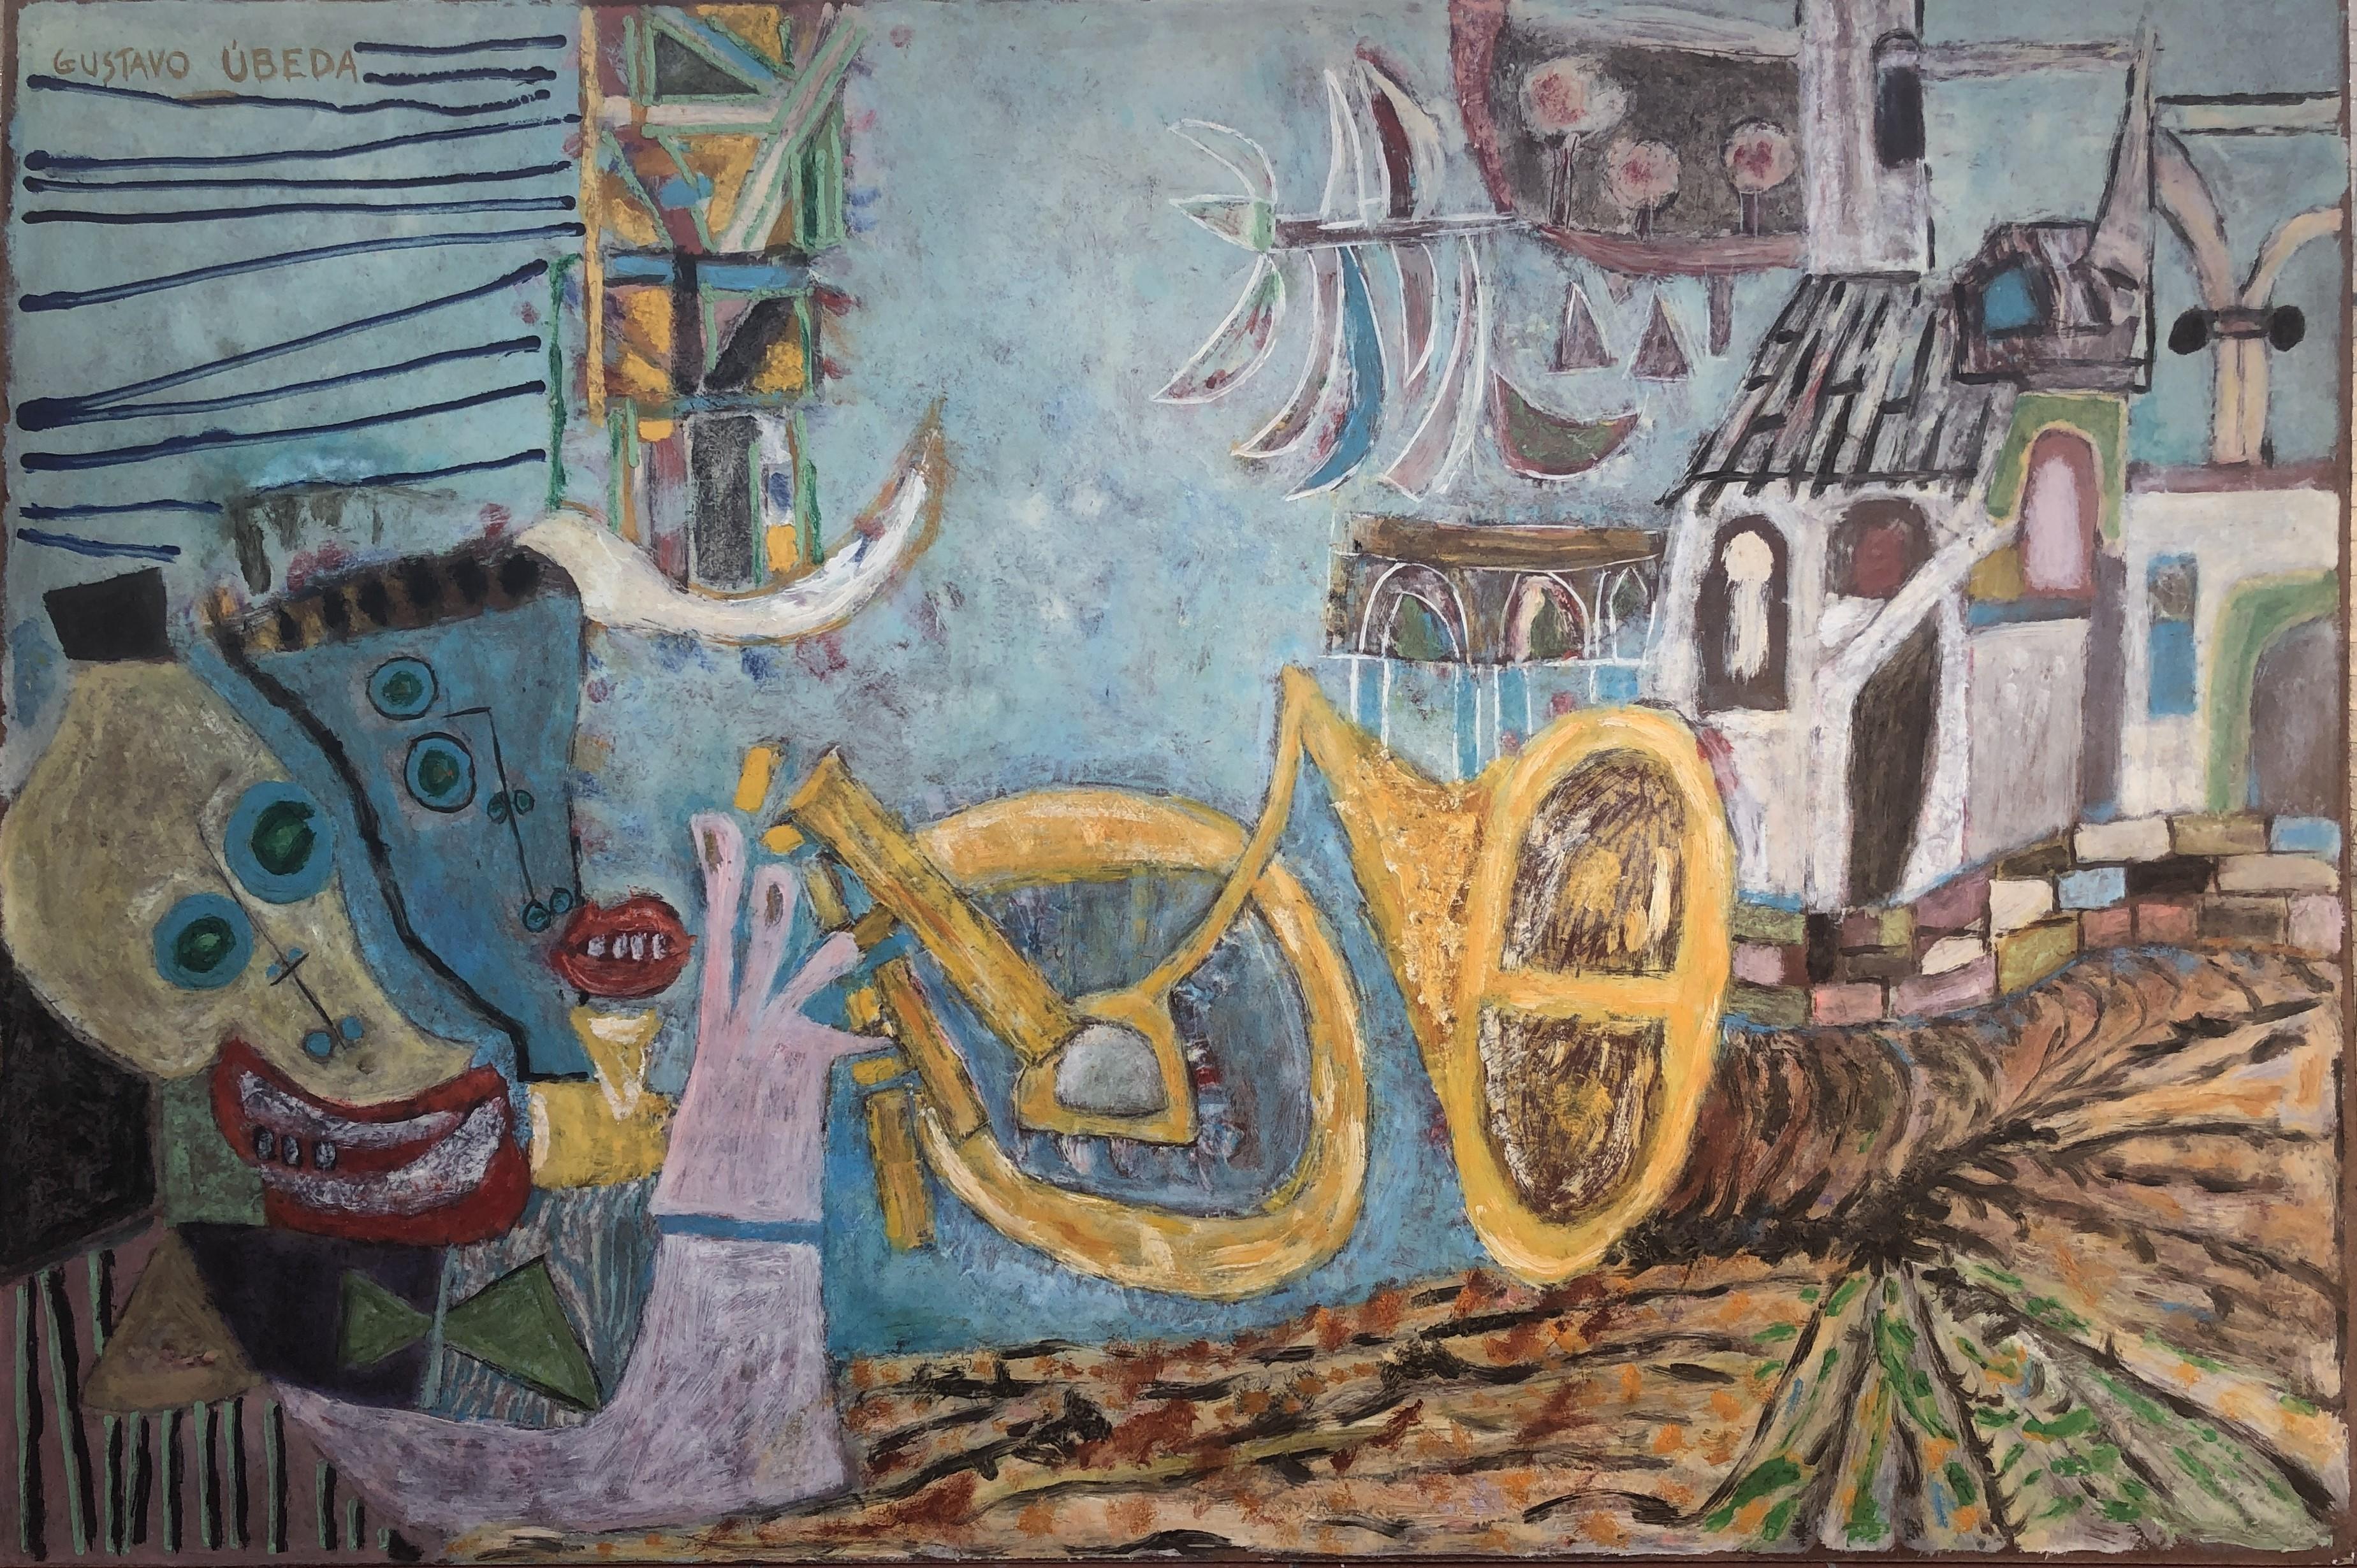 Portrait Painting Gustavo Ubeda - Scène surréaliste Brésil huile sur panneau peinture surréaliste